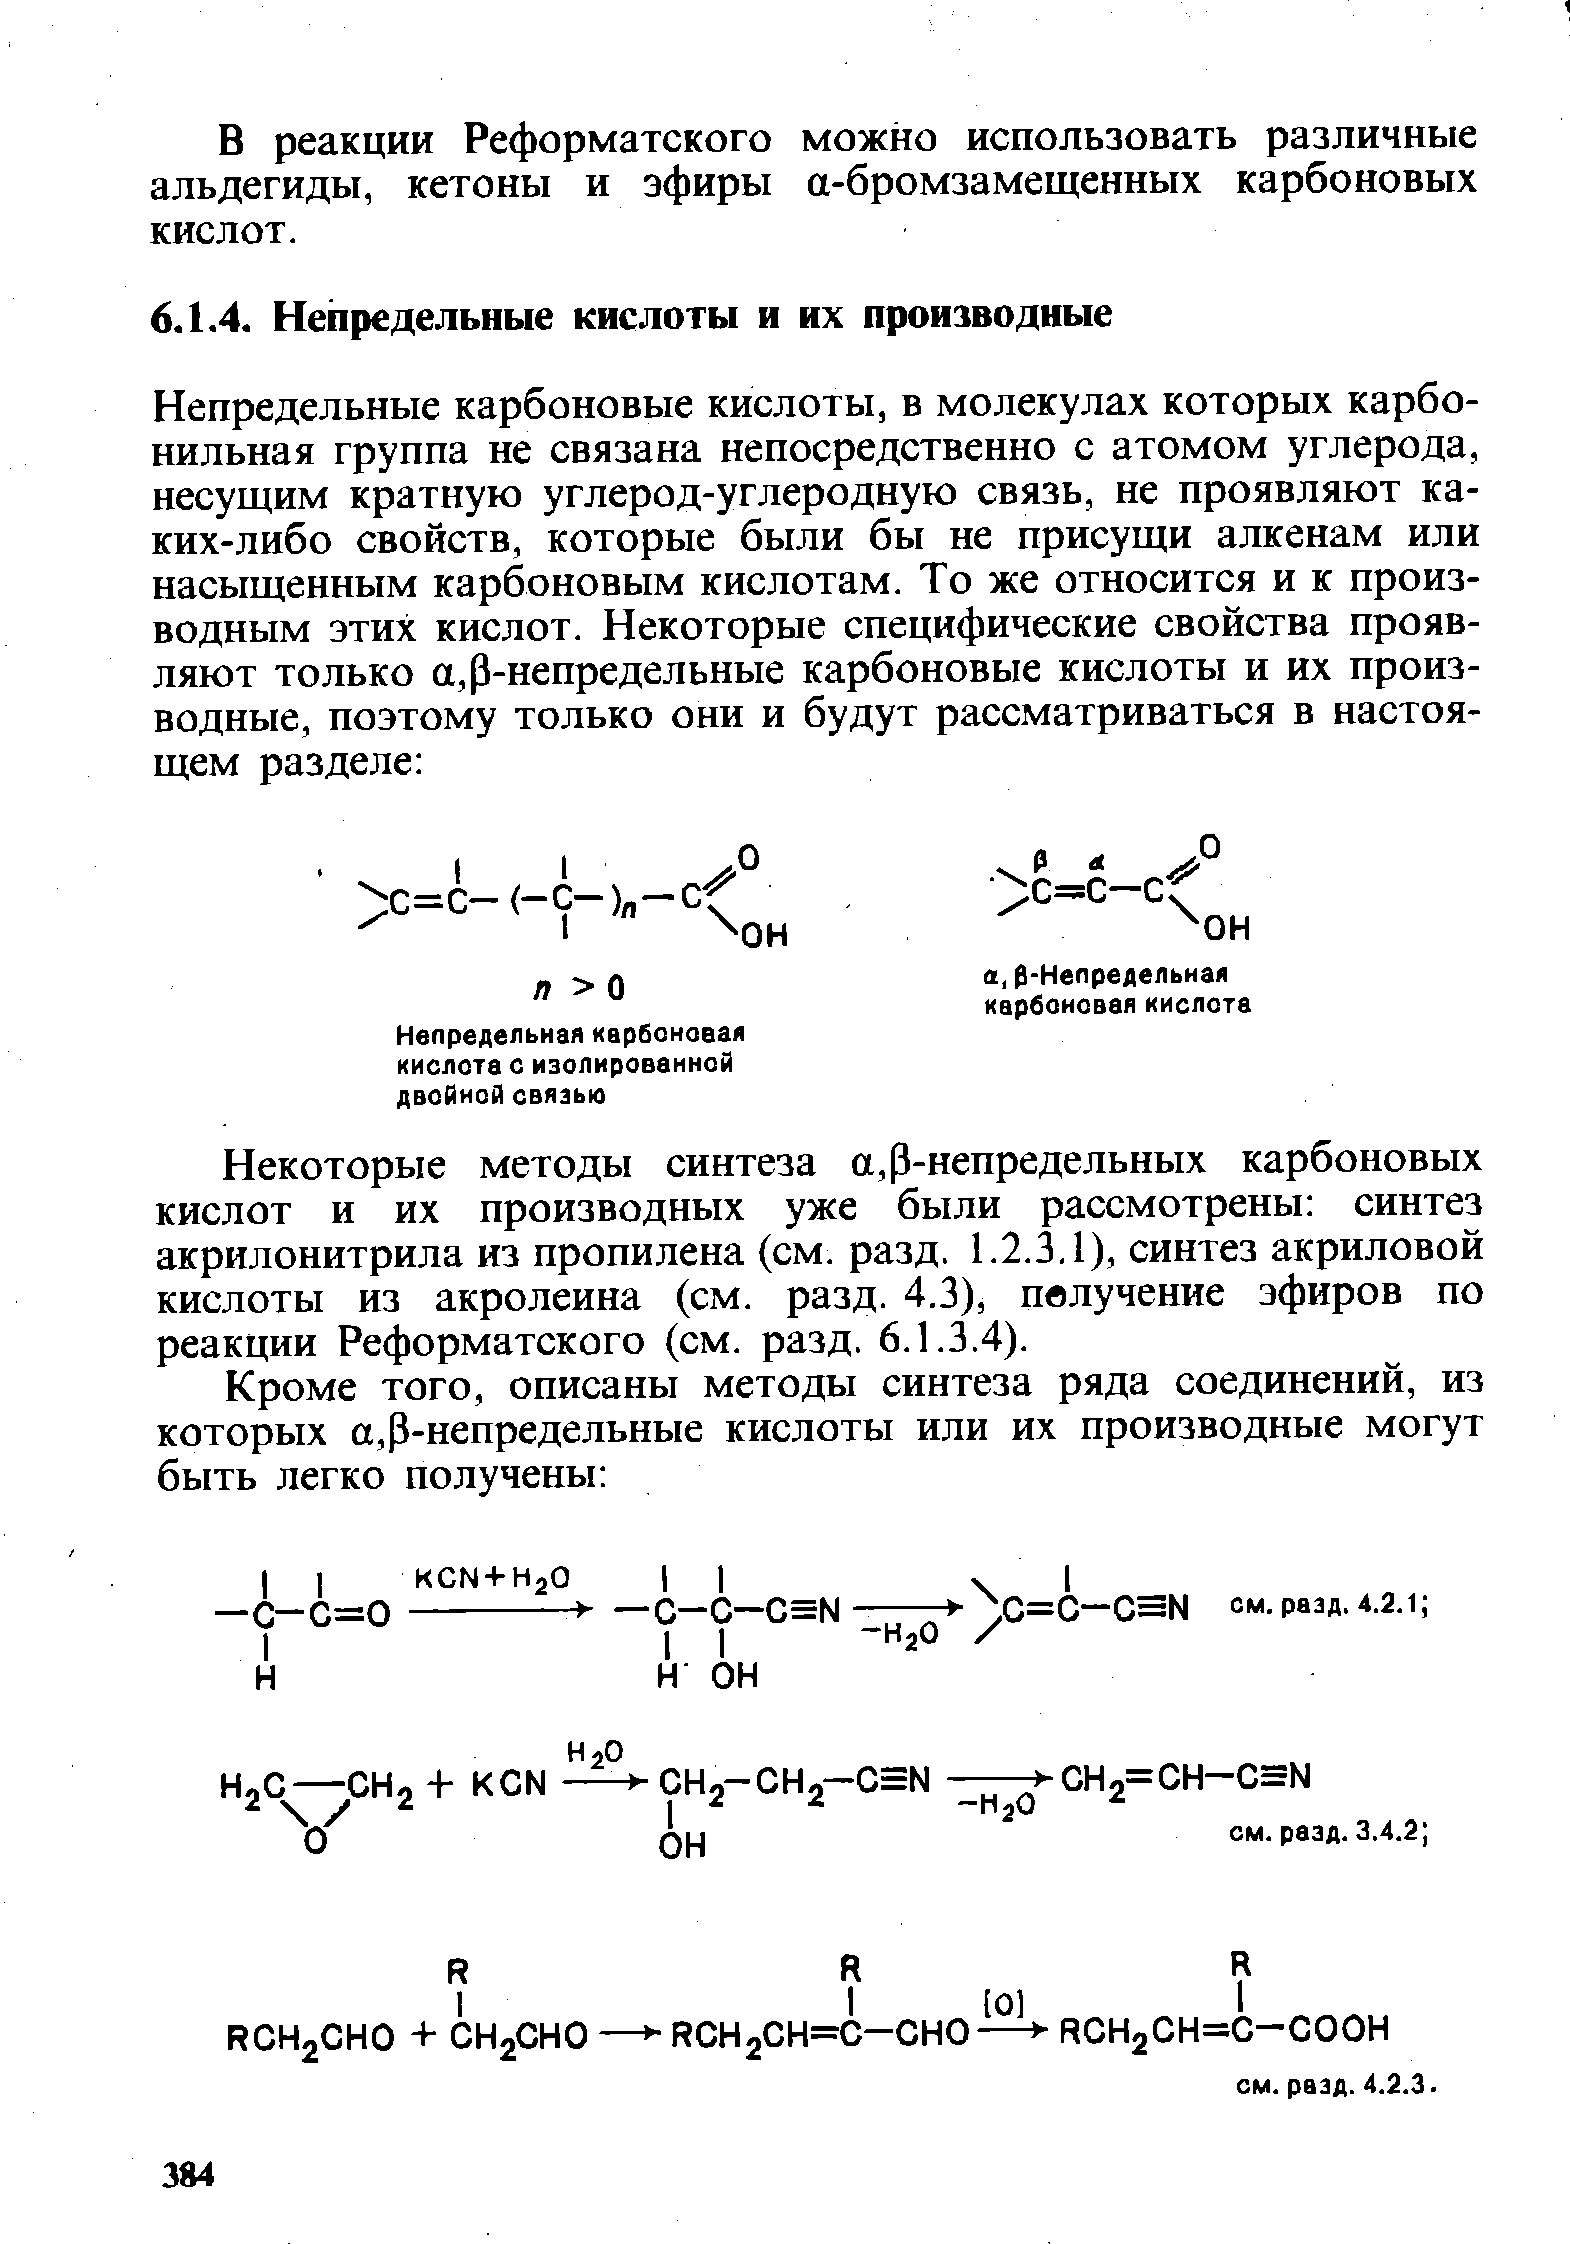 Некоторые методы синтеза а, Р-непредельных карбоновых кислот и их производных уже были рассмотрены синтез акрилоиитрила из пропилена (см. разд. 1.2.3,1), синтез акриловой кислоты из акролеина (см. разд. 4.3), пвлучение эфиров по реакции Реформатского (см. разд. 6.1.3.4).